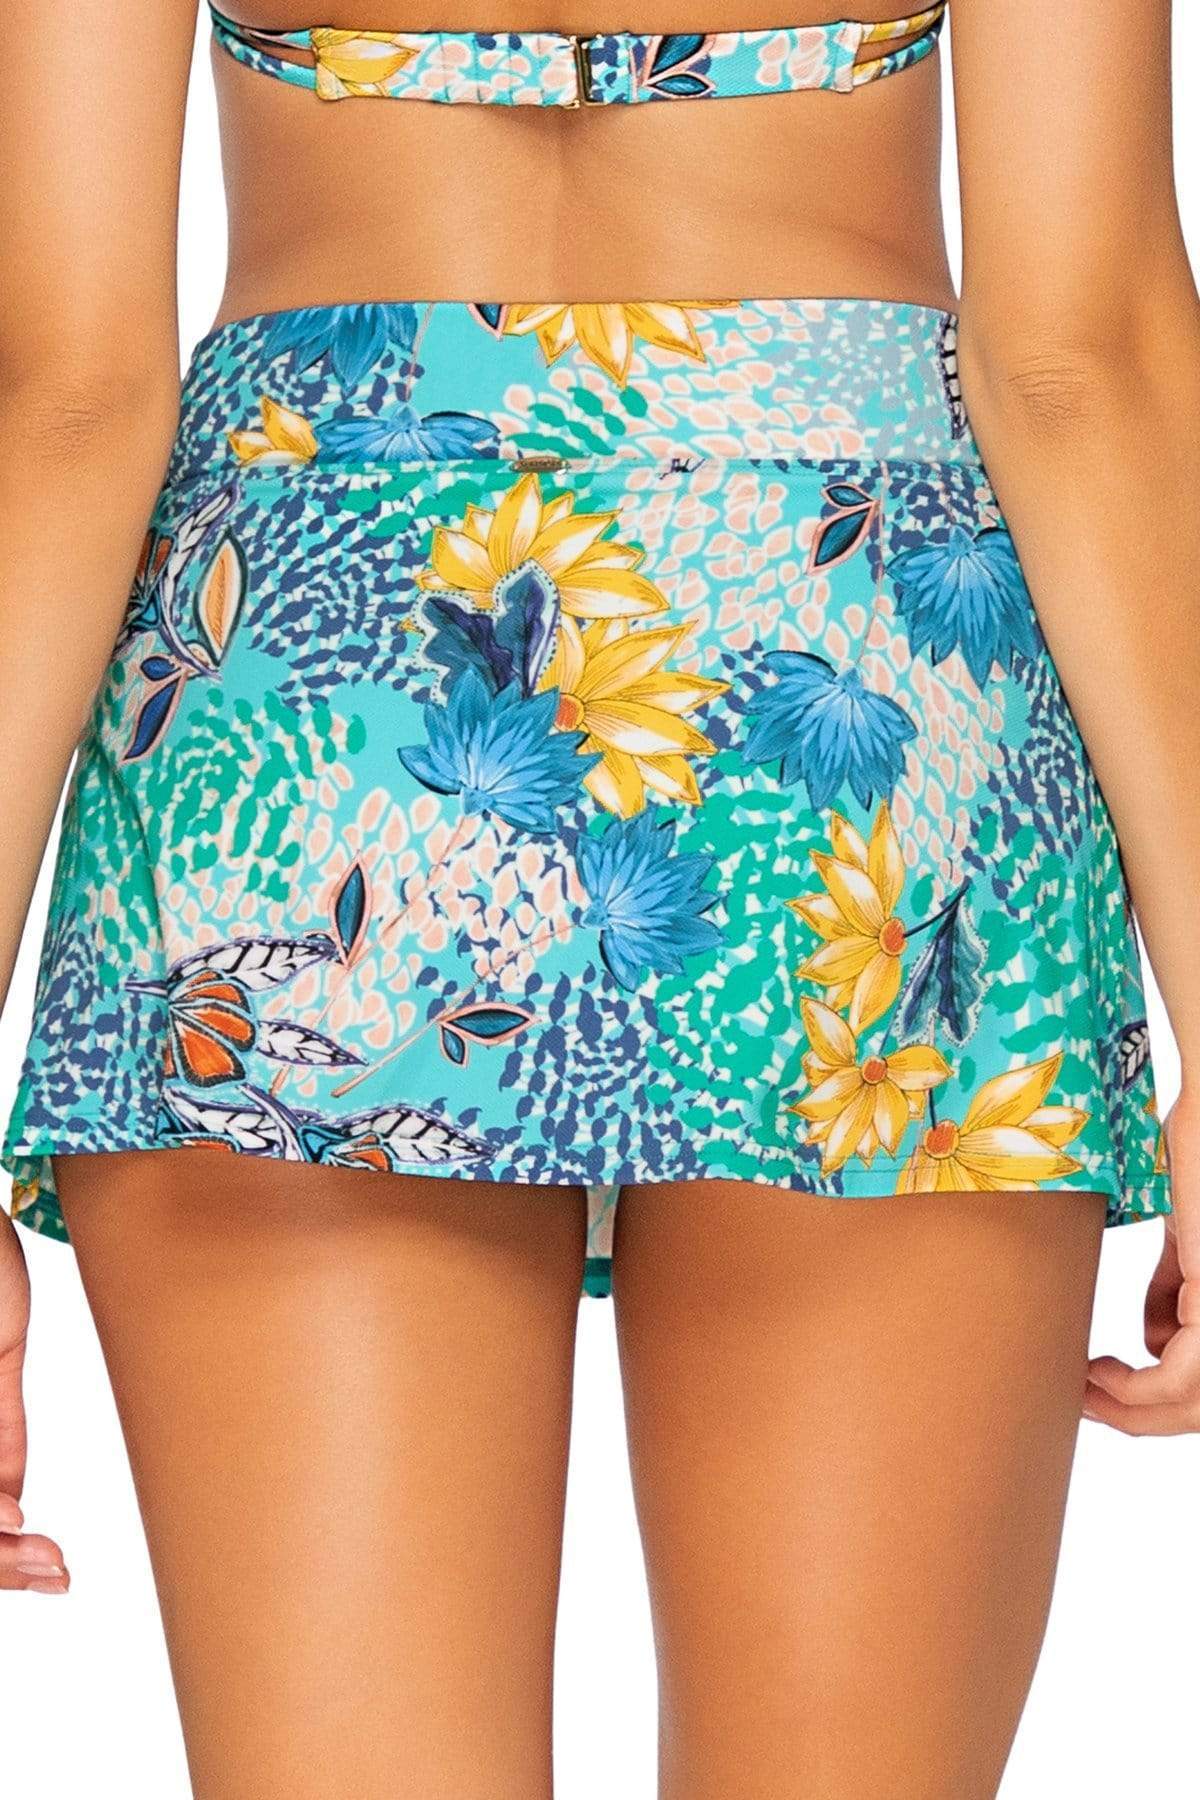 Bestswimwear -  Sunsets Aqua Reef Summer Lovin Swim Skirt